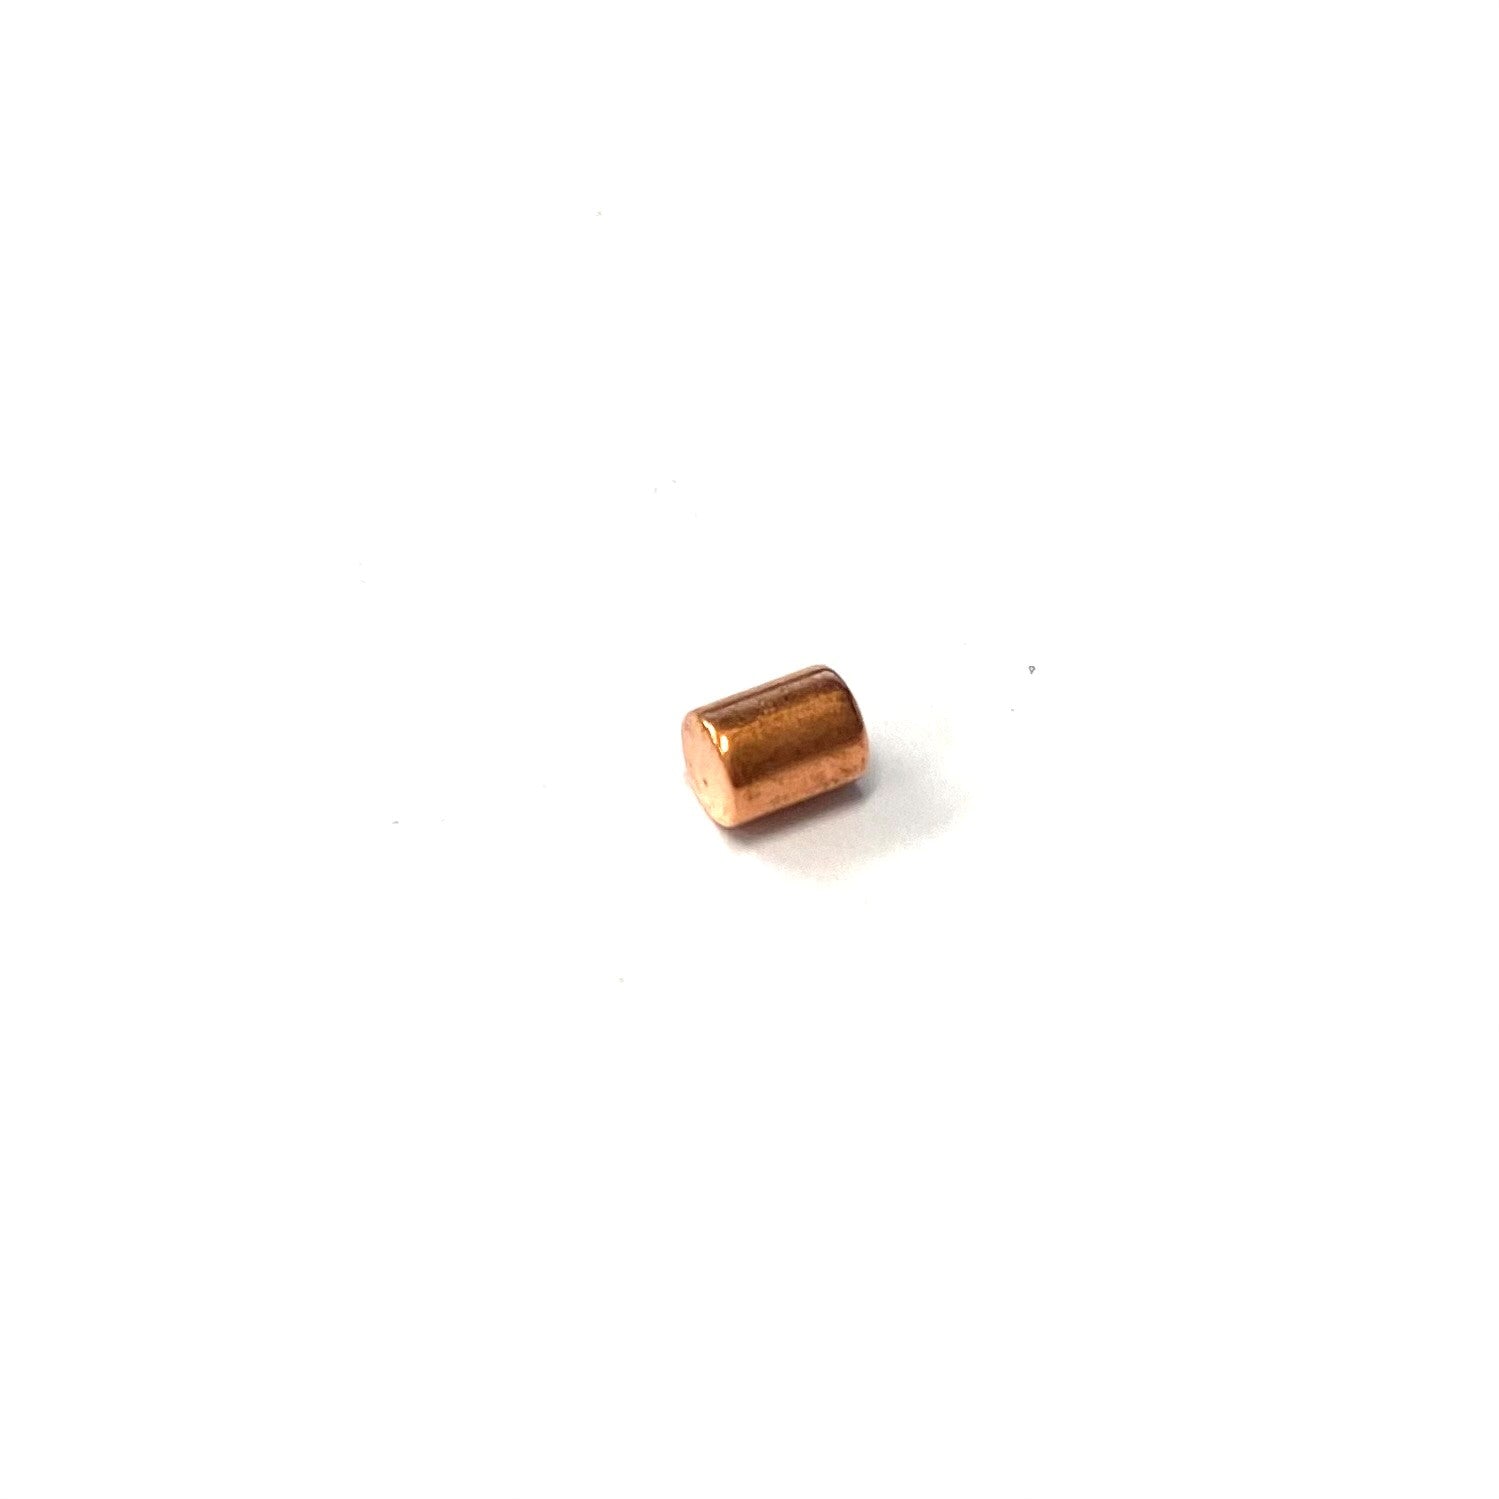 Aimant Rectangulaire au Neodymium, 35mm long x 35mm large x 5mm d'épaisseur  (1.38 x 1.38 x 0.2) - Magnet Montréal